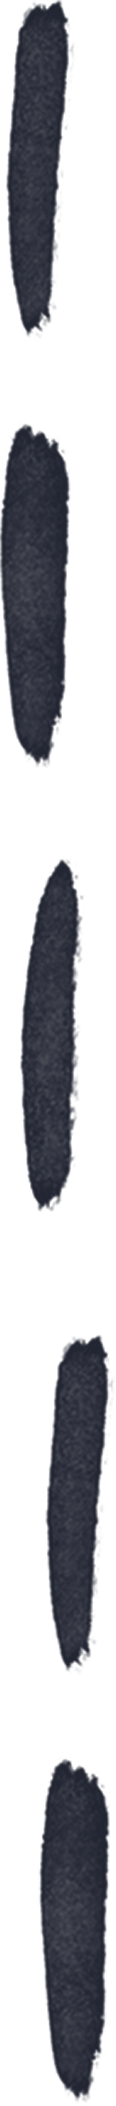 Black dash line в PNG, SVG